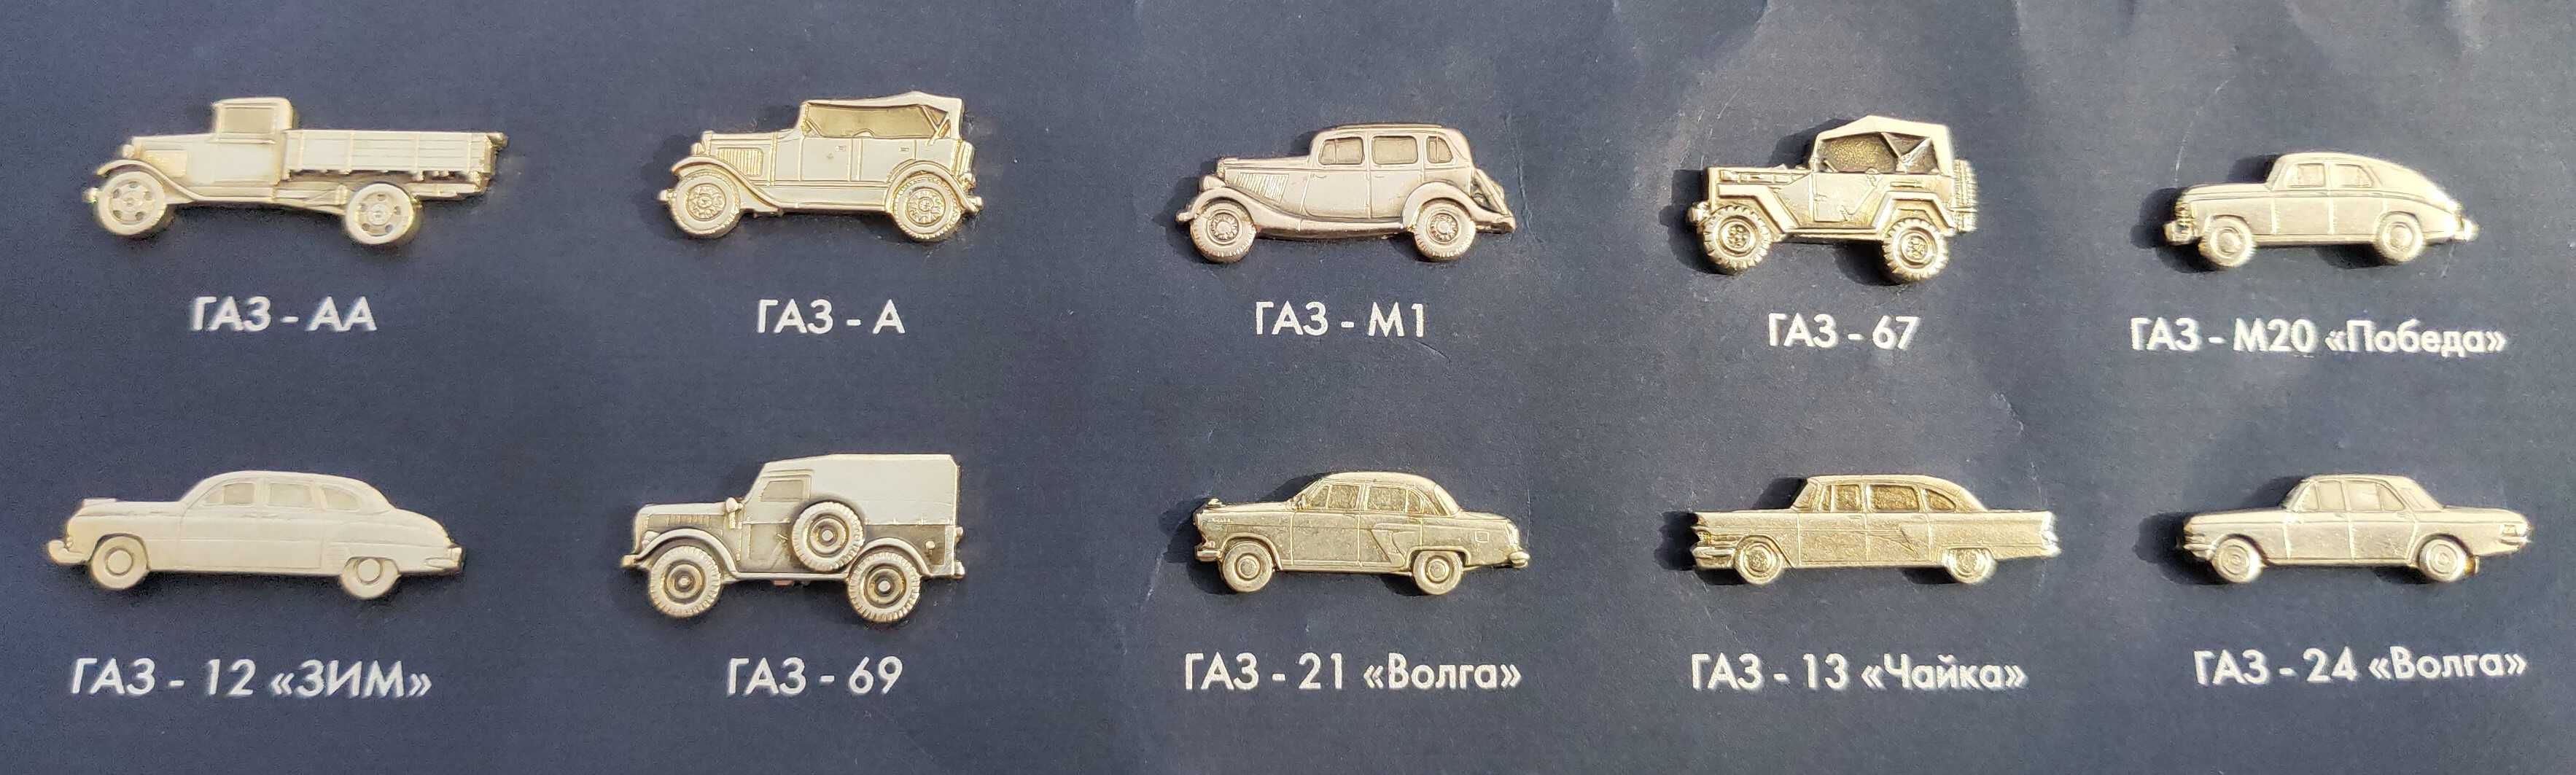 Коллекционный набор булавочных значков марки Газ